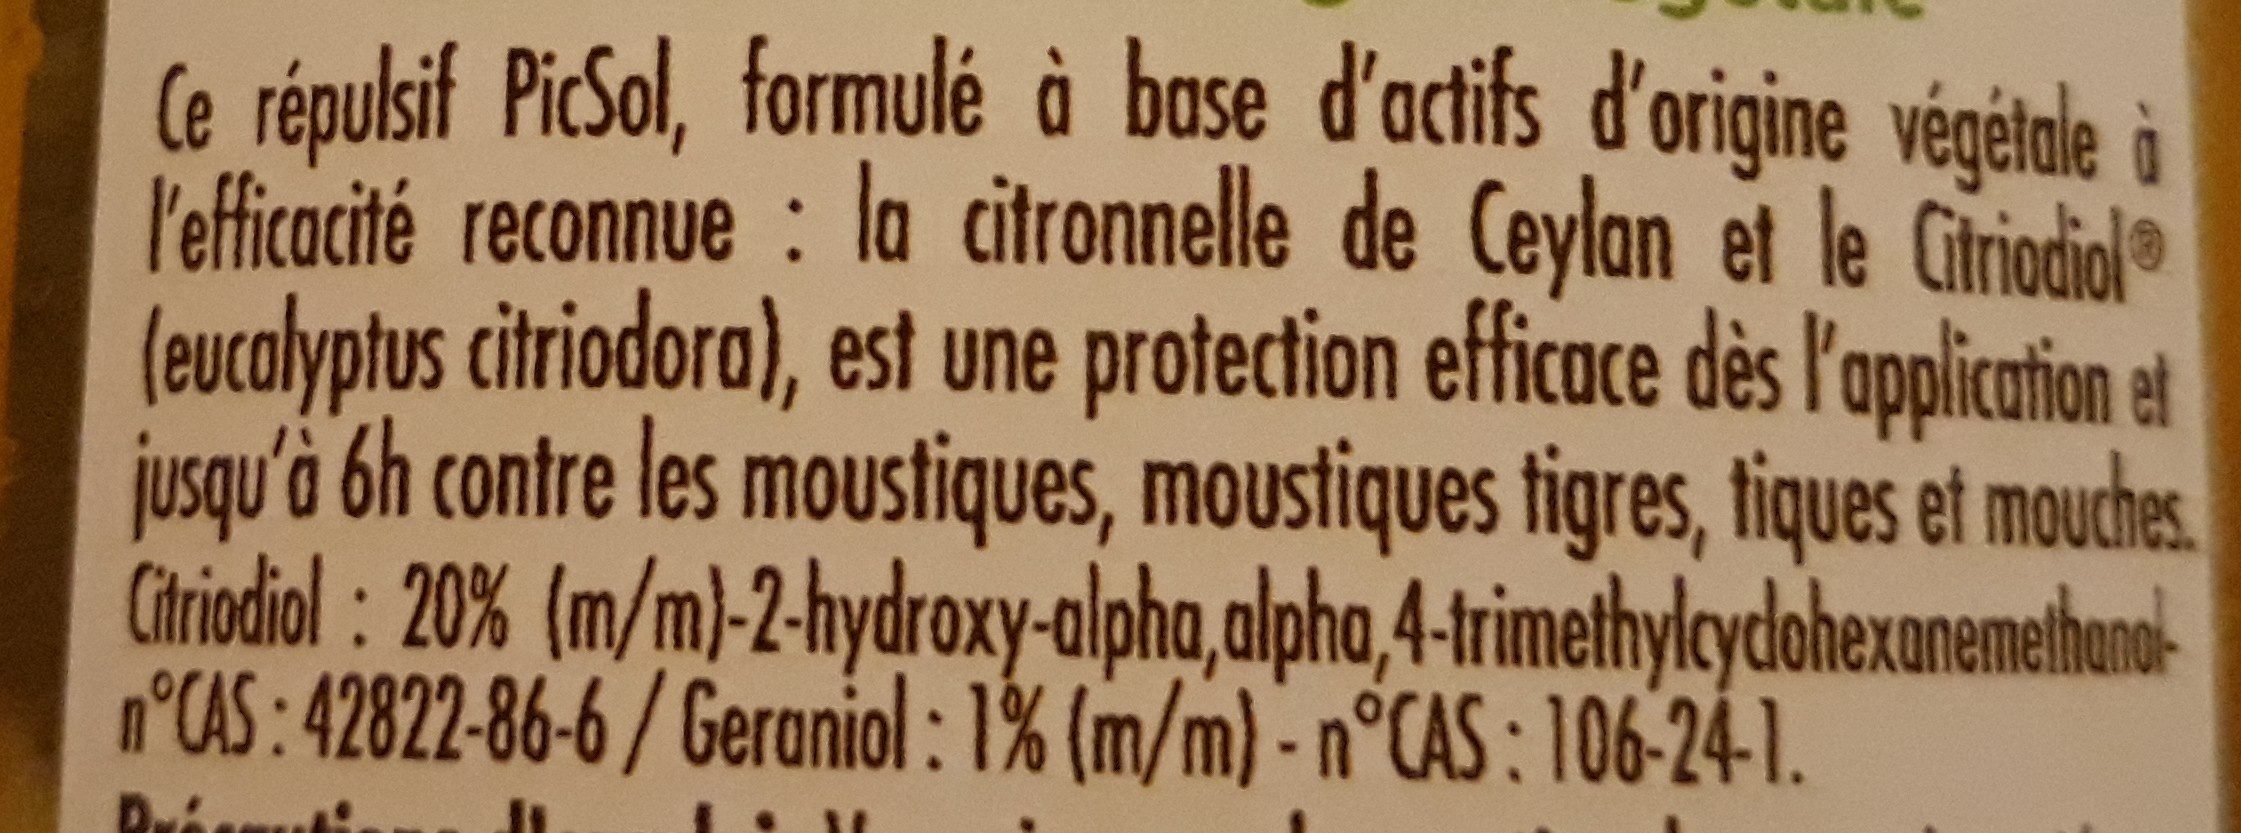 Anti moustique citronnelle - Ingredients - fr